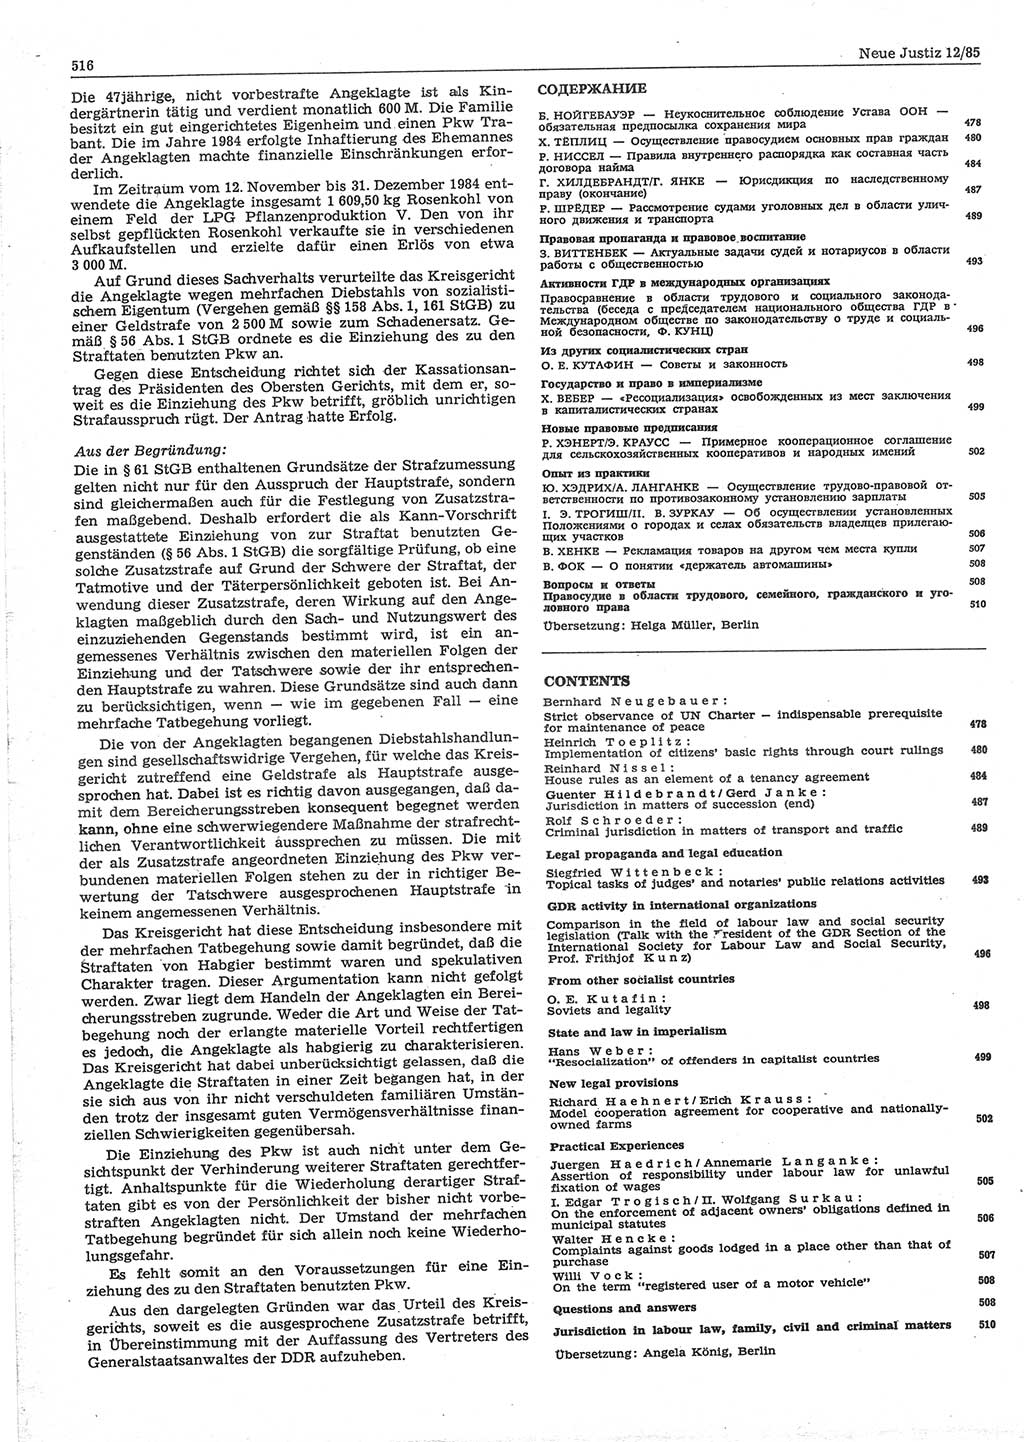 Neue Justiz (NJ), Zeitschrift für sozialistisches Recht und Gesetzlichkeit [Deutsche Demokratische Republik (DDR)], 39. Jahrgang 1985, Seite 516 (NJ DDR 1985, S. 516)